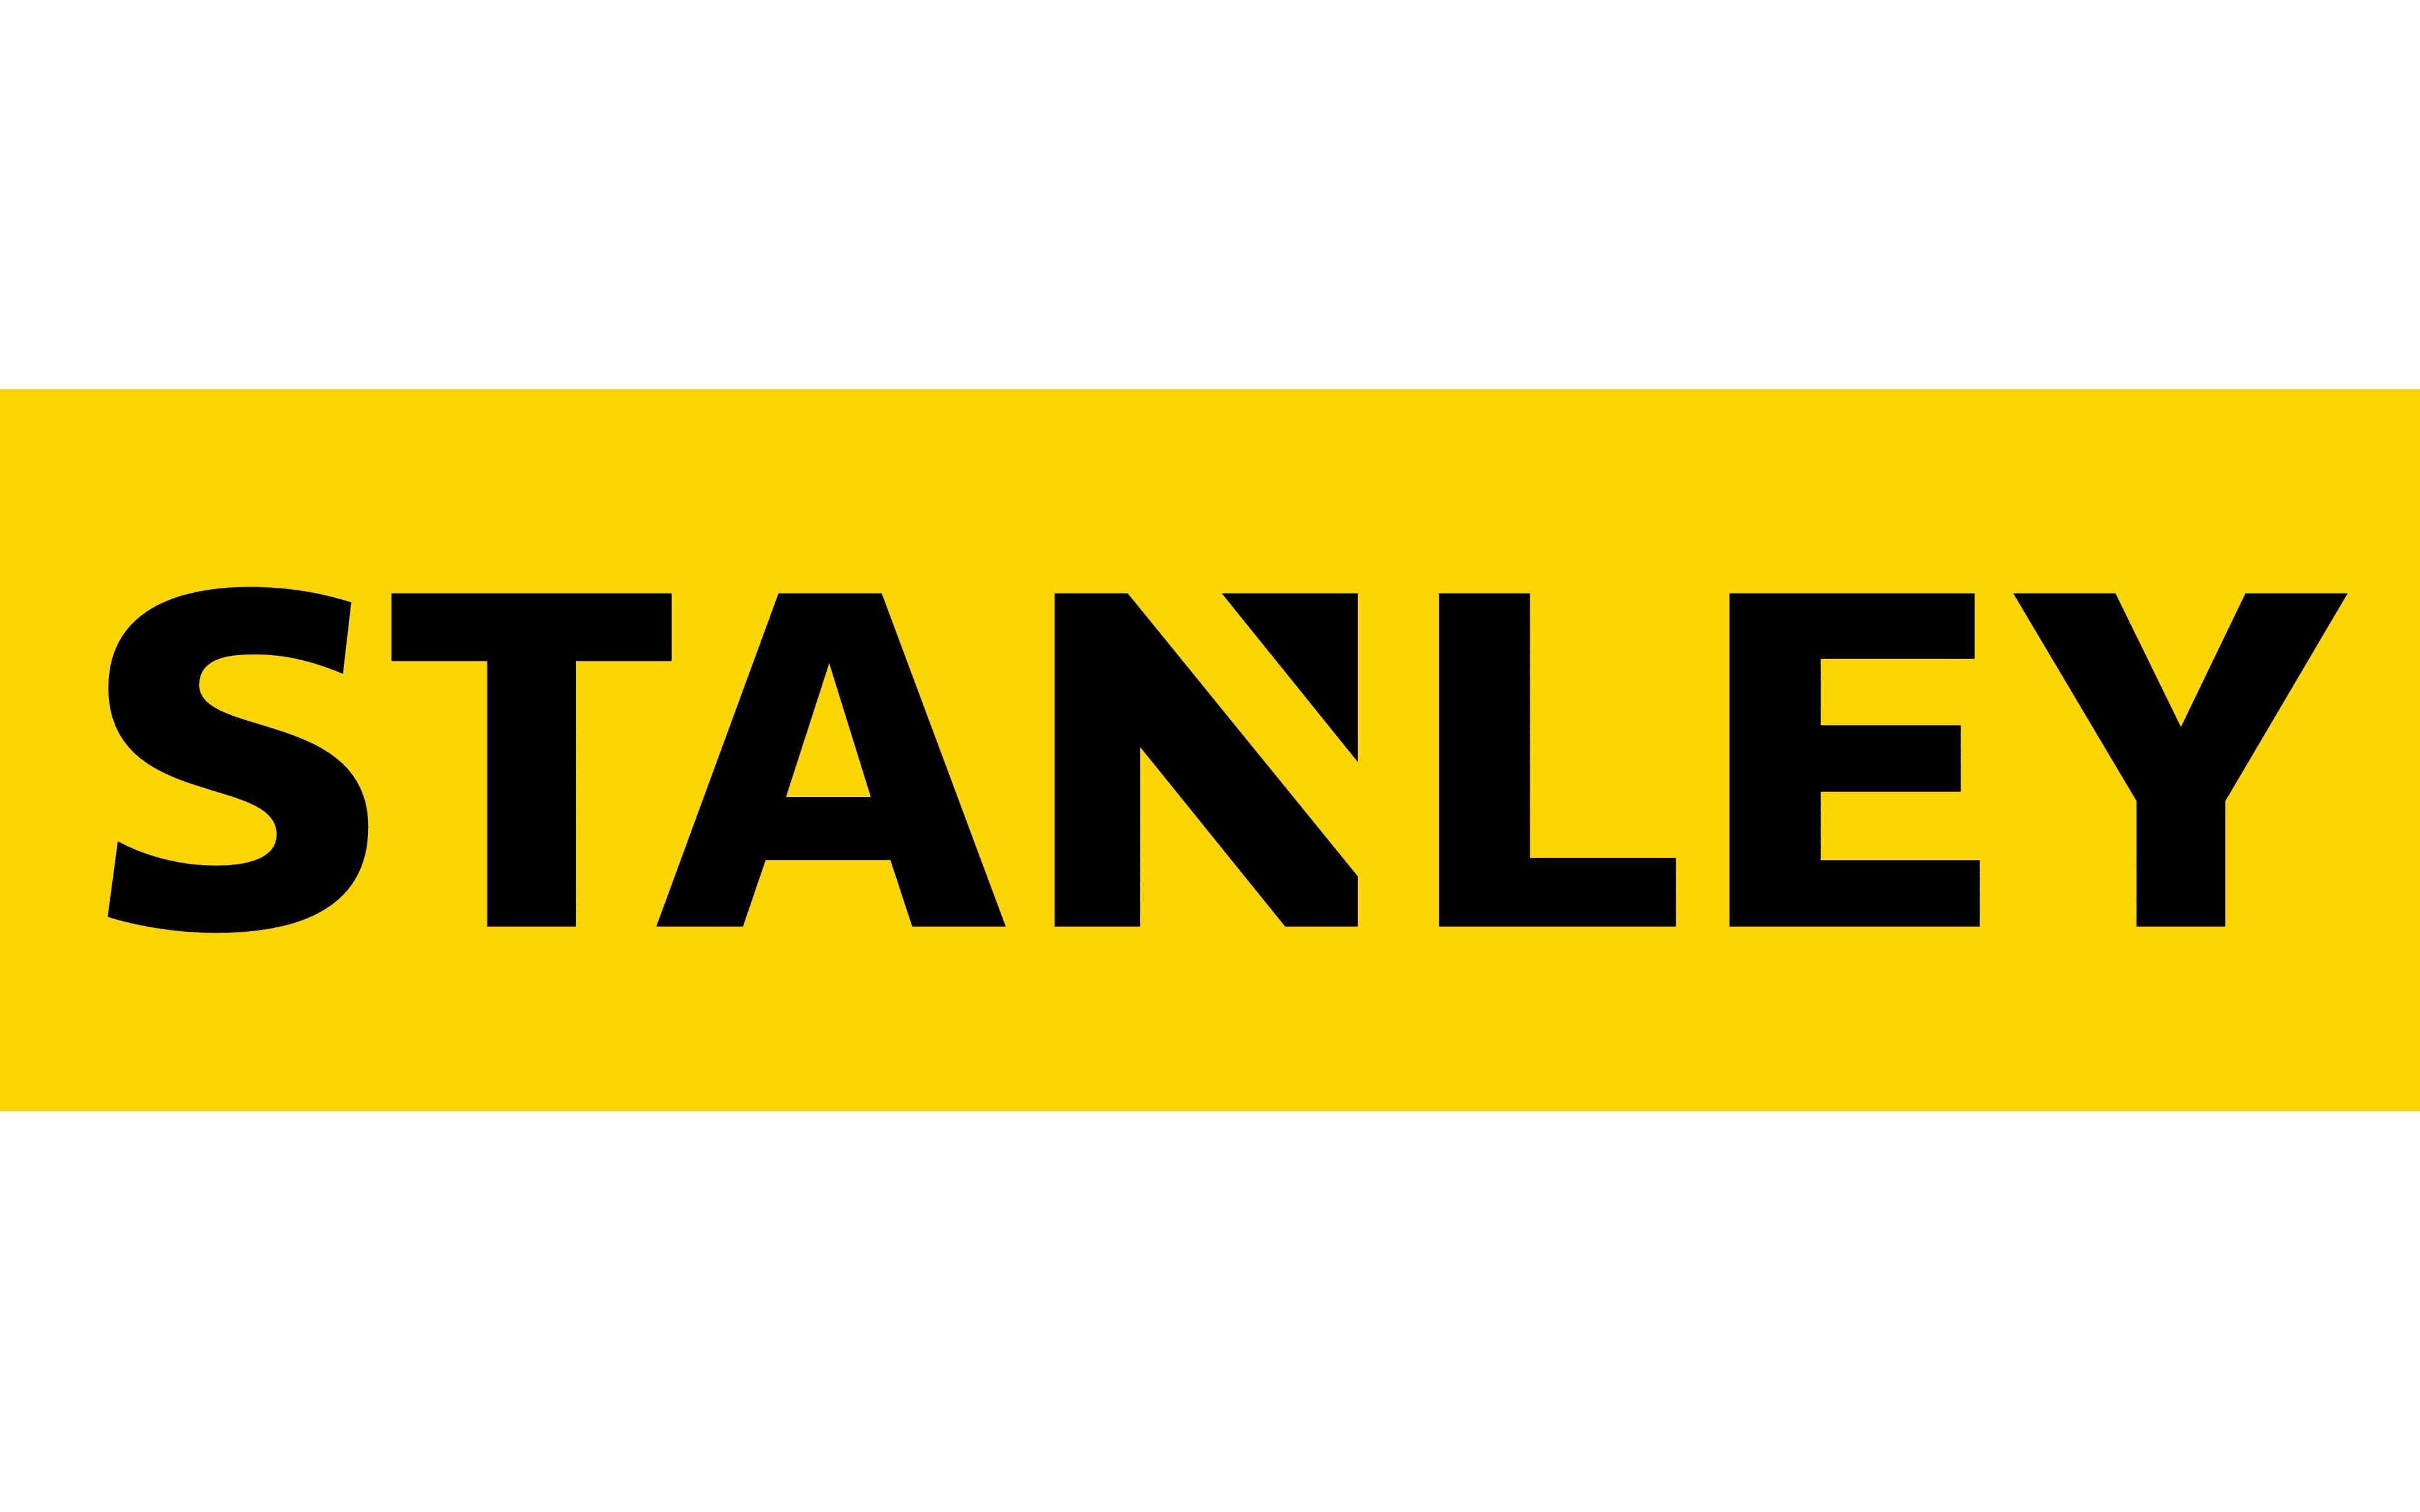 https://1000logos.net/wp-content/uploads/2020/08/Stanley-Logo.jpg